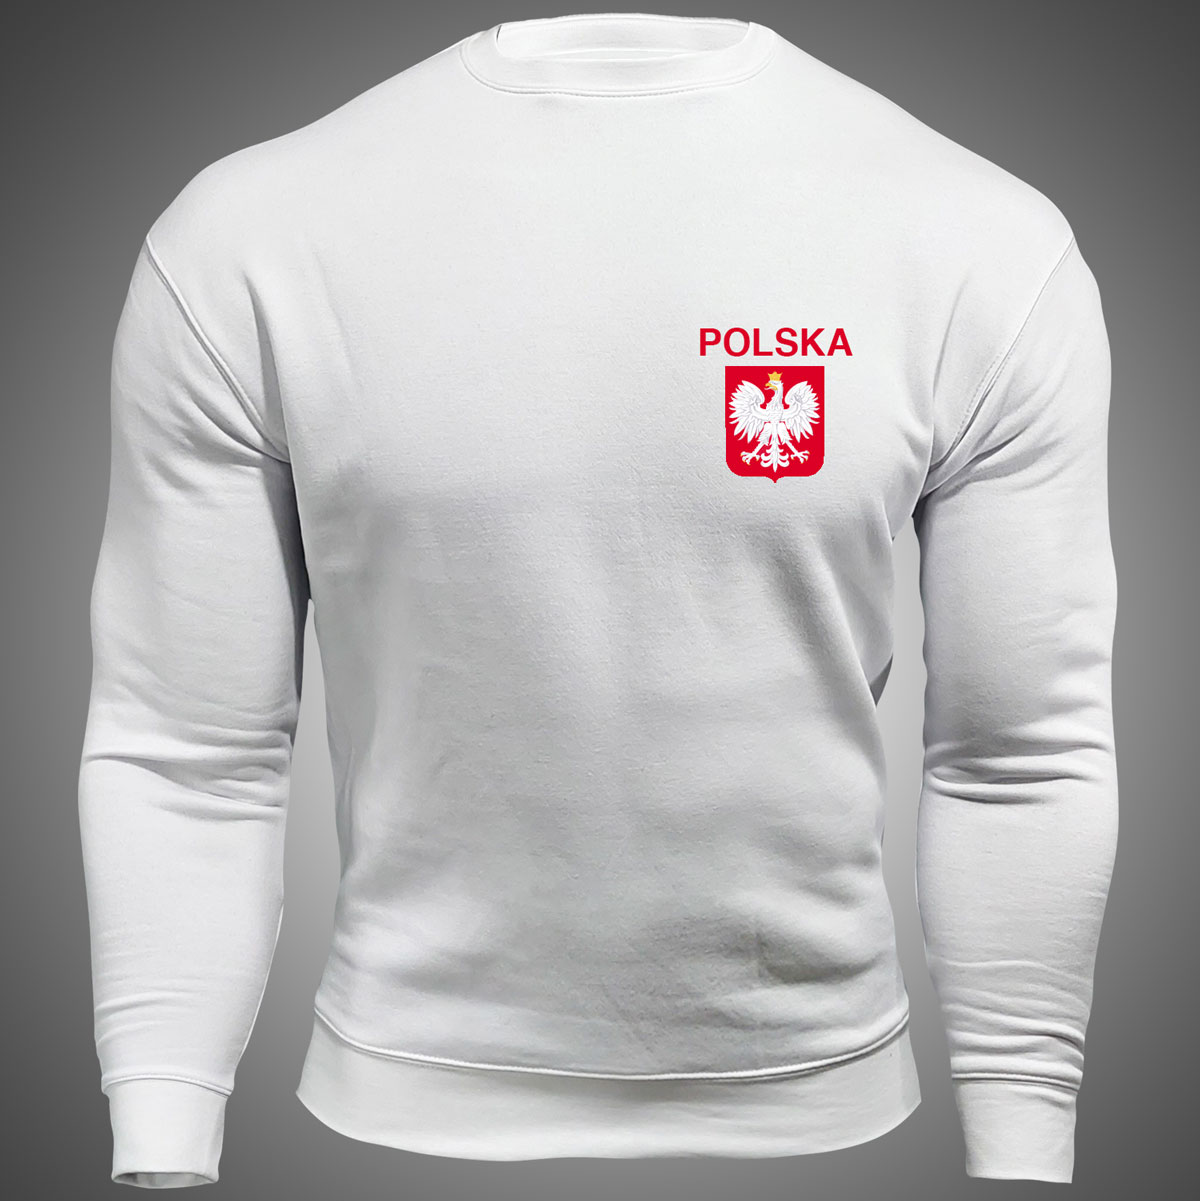 bluza z napisem polska bluza patriotyczna męska biała z godłem polski